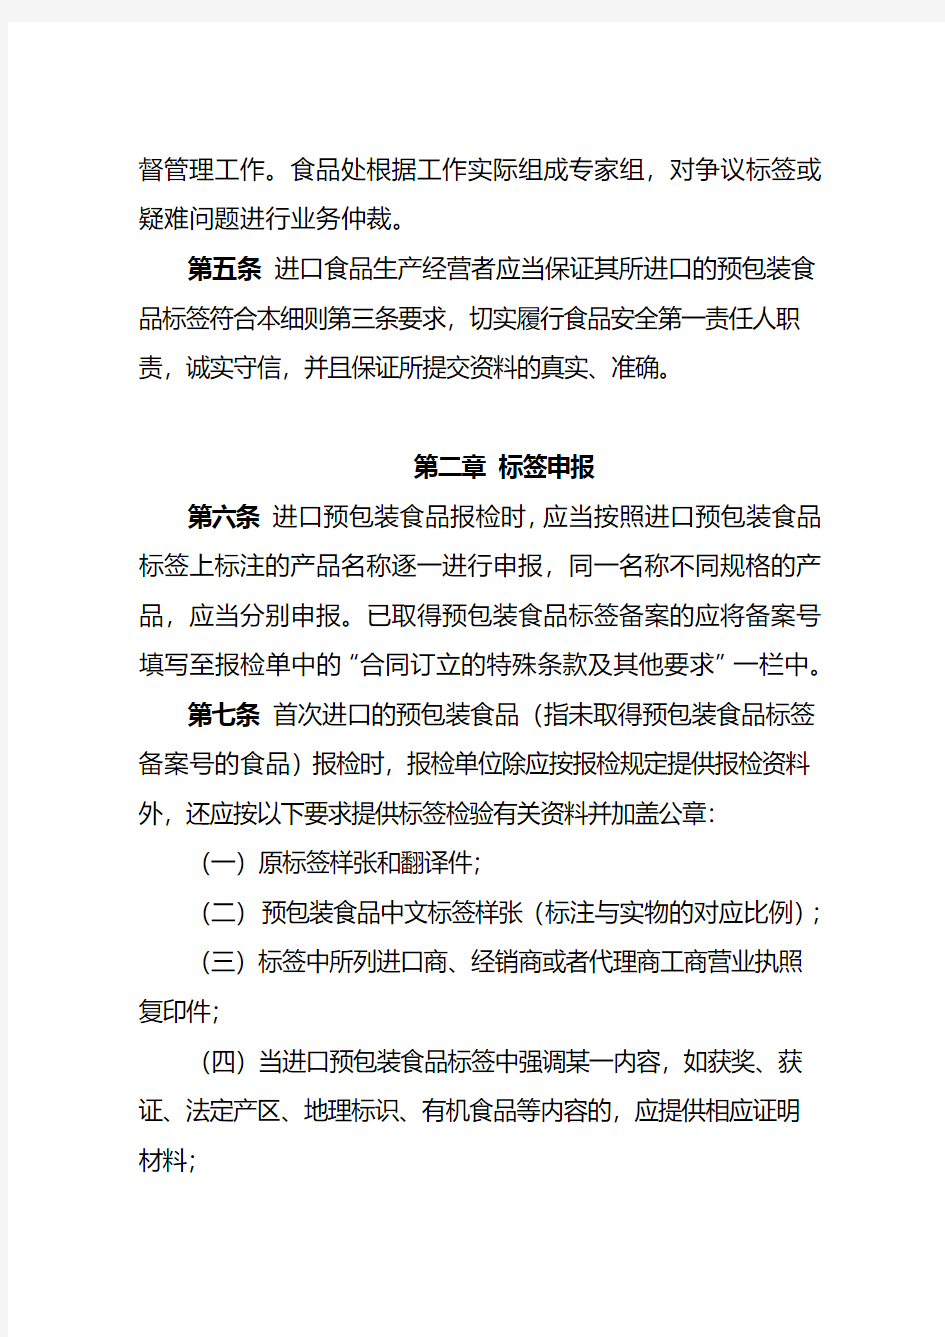 2013版天津检验检疫局进口预包装食品标签检验监督管理实施细则